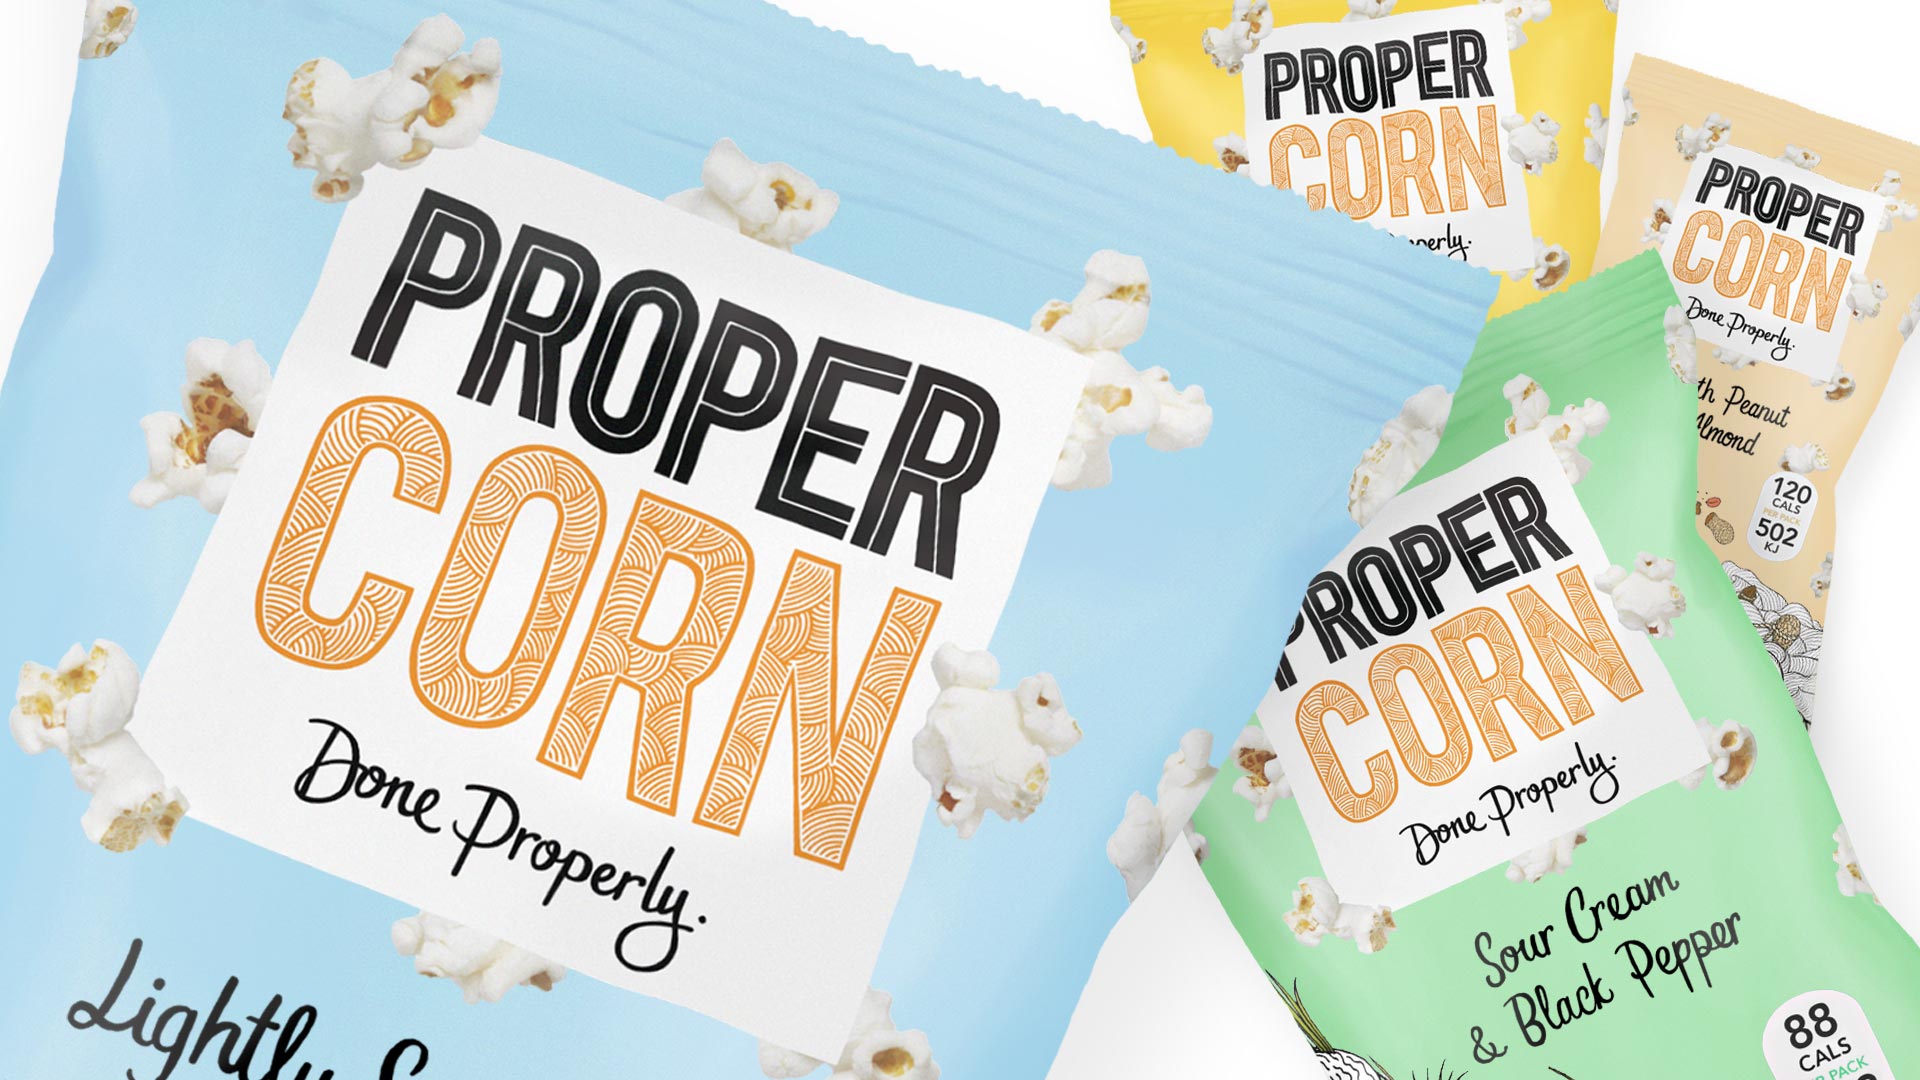 Propercorn-artwork-packaging